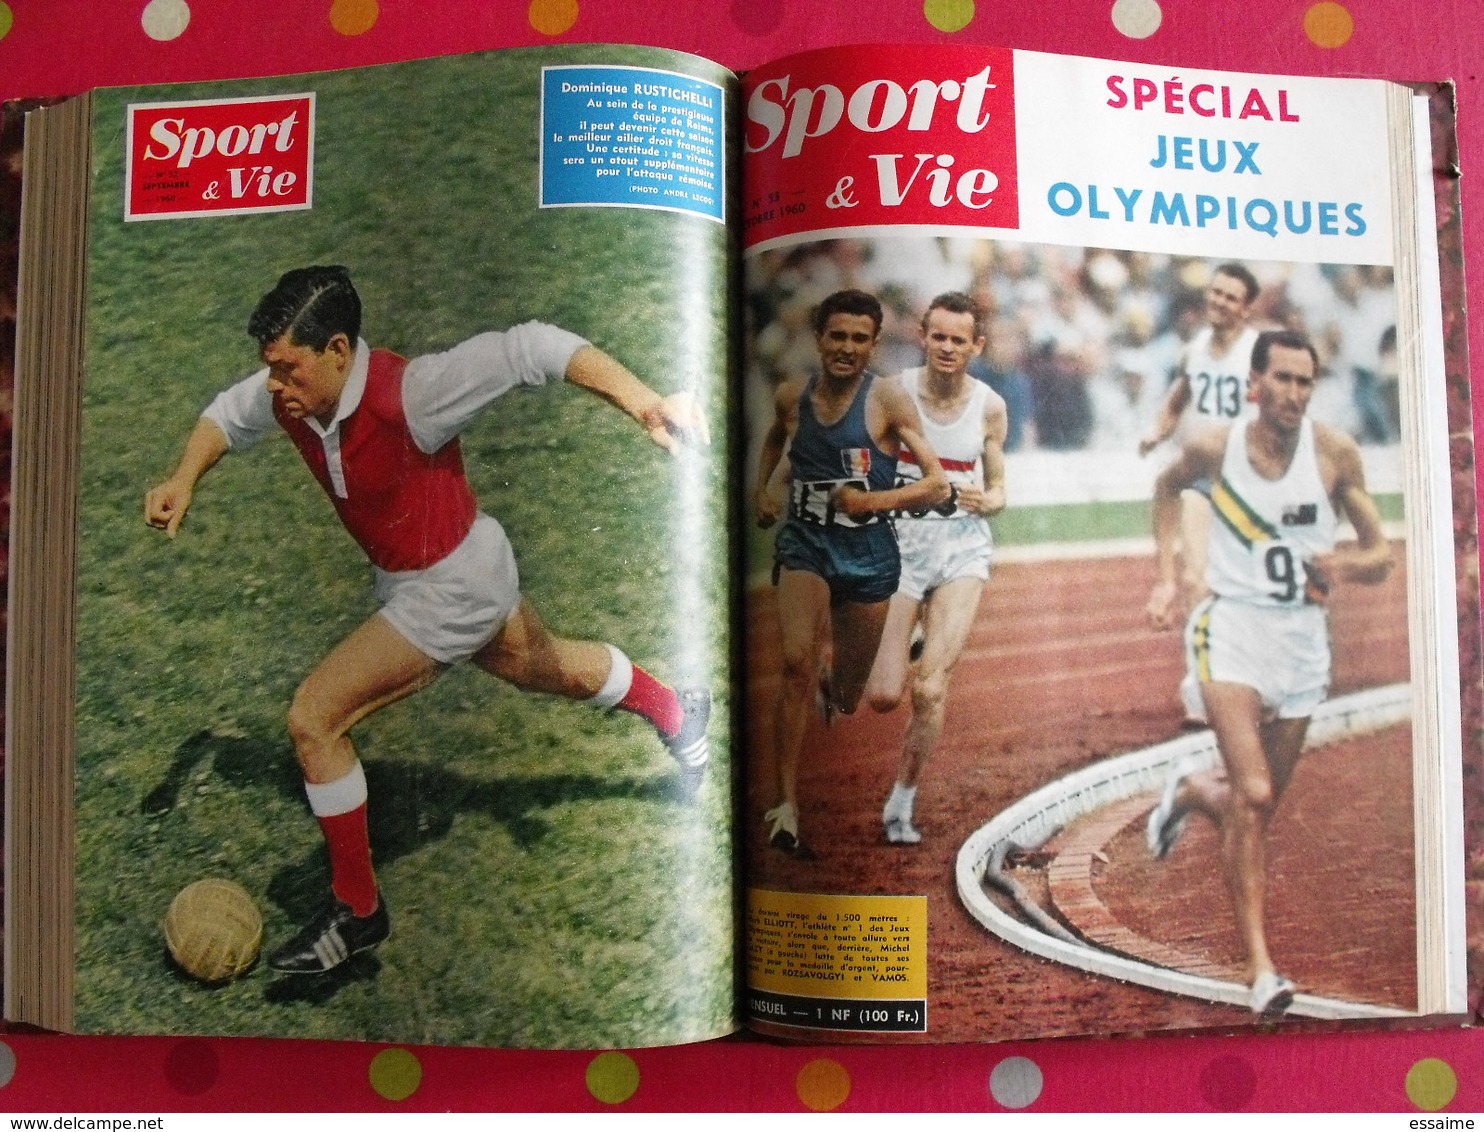 reliure recueil mensuel Sport & Vie. 1960. 9 n° : 47 à 55. tour de France Nencini. Boxe rugby football tennis